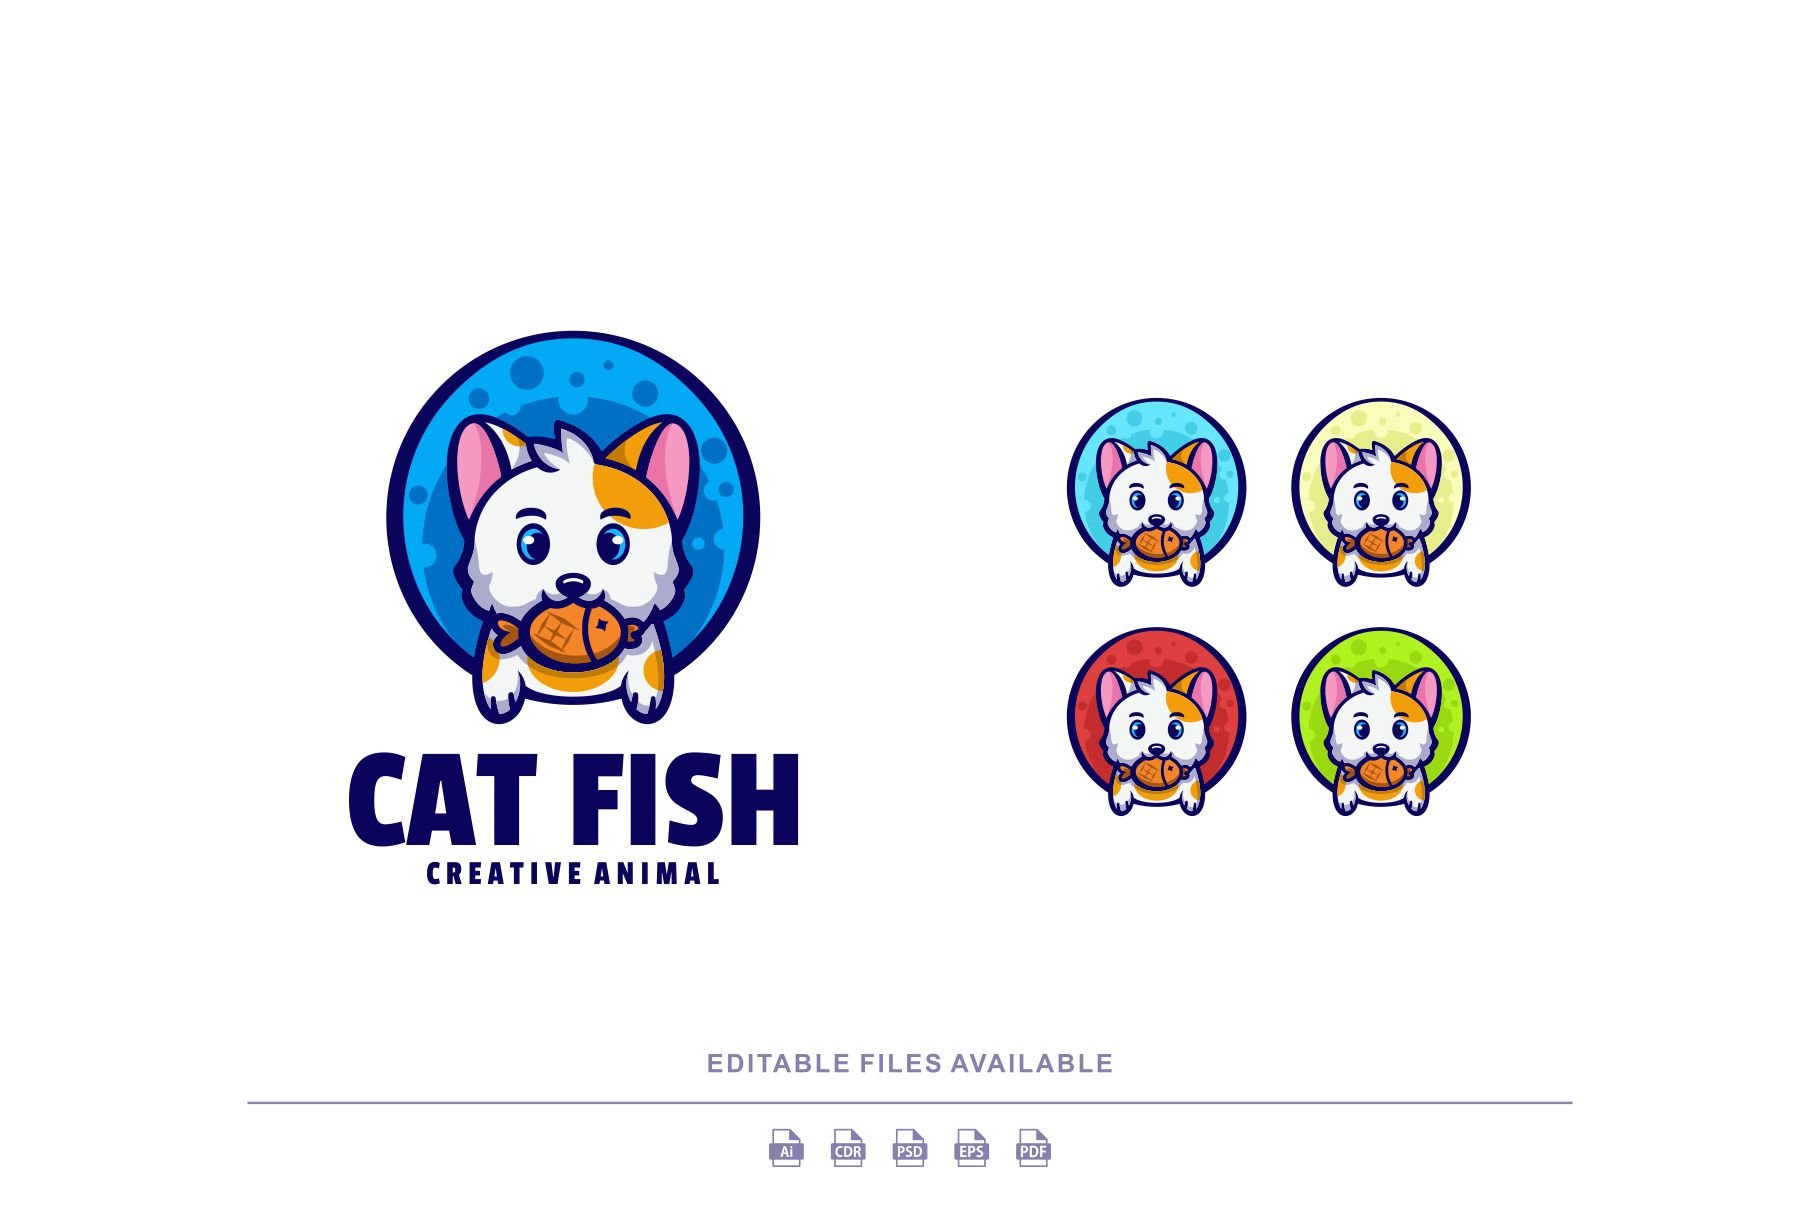 Cat Fish Cartoon Mascot Logo cover image.